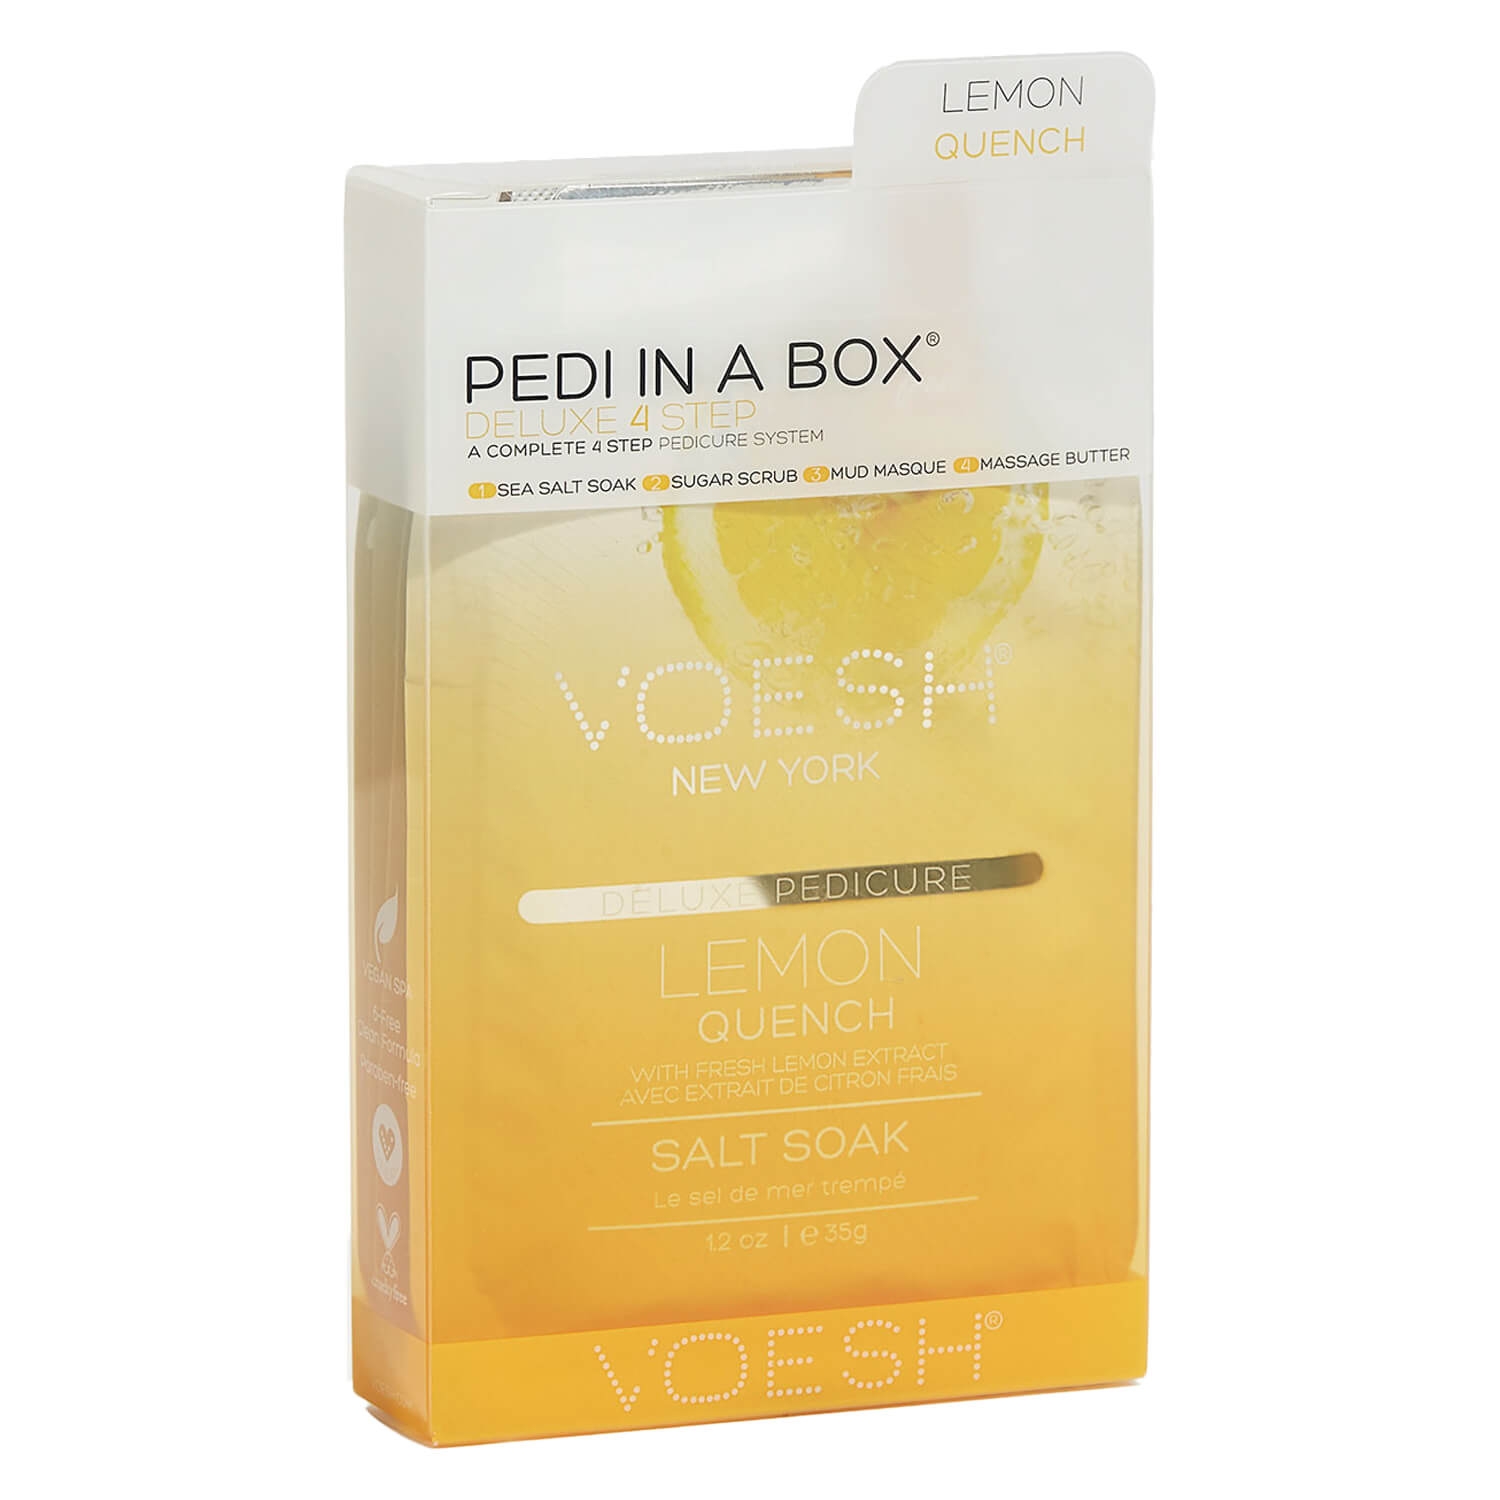 Produktbild von VOESH New York - Pedi In A Box 4 Step Lemon Quench